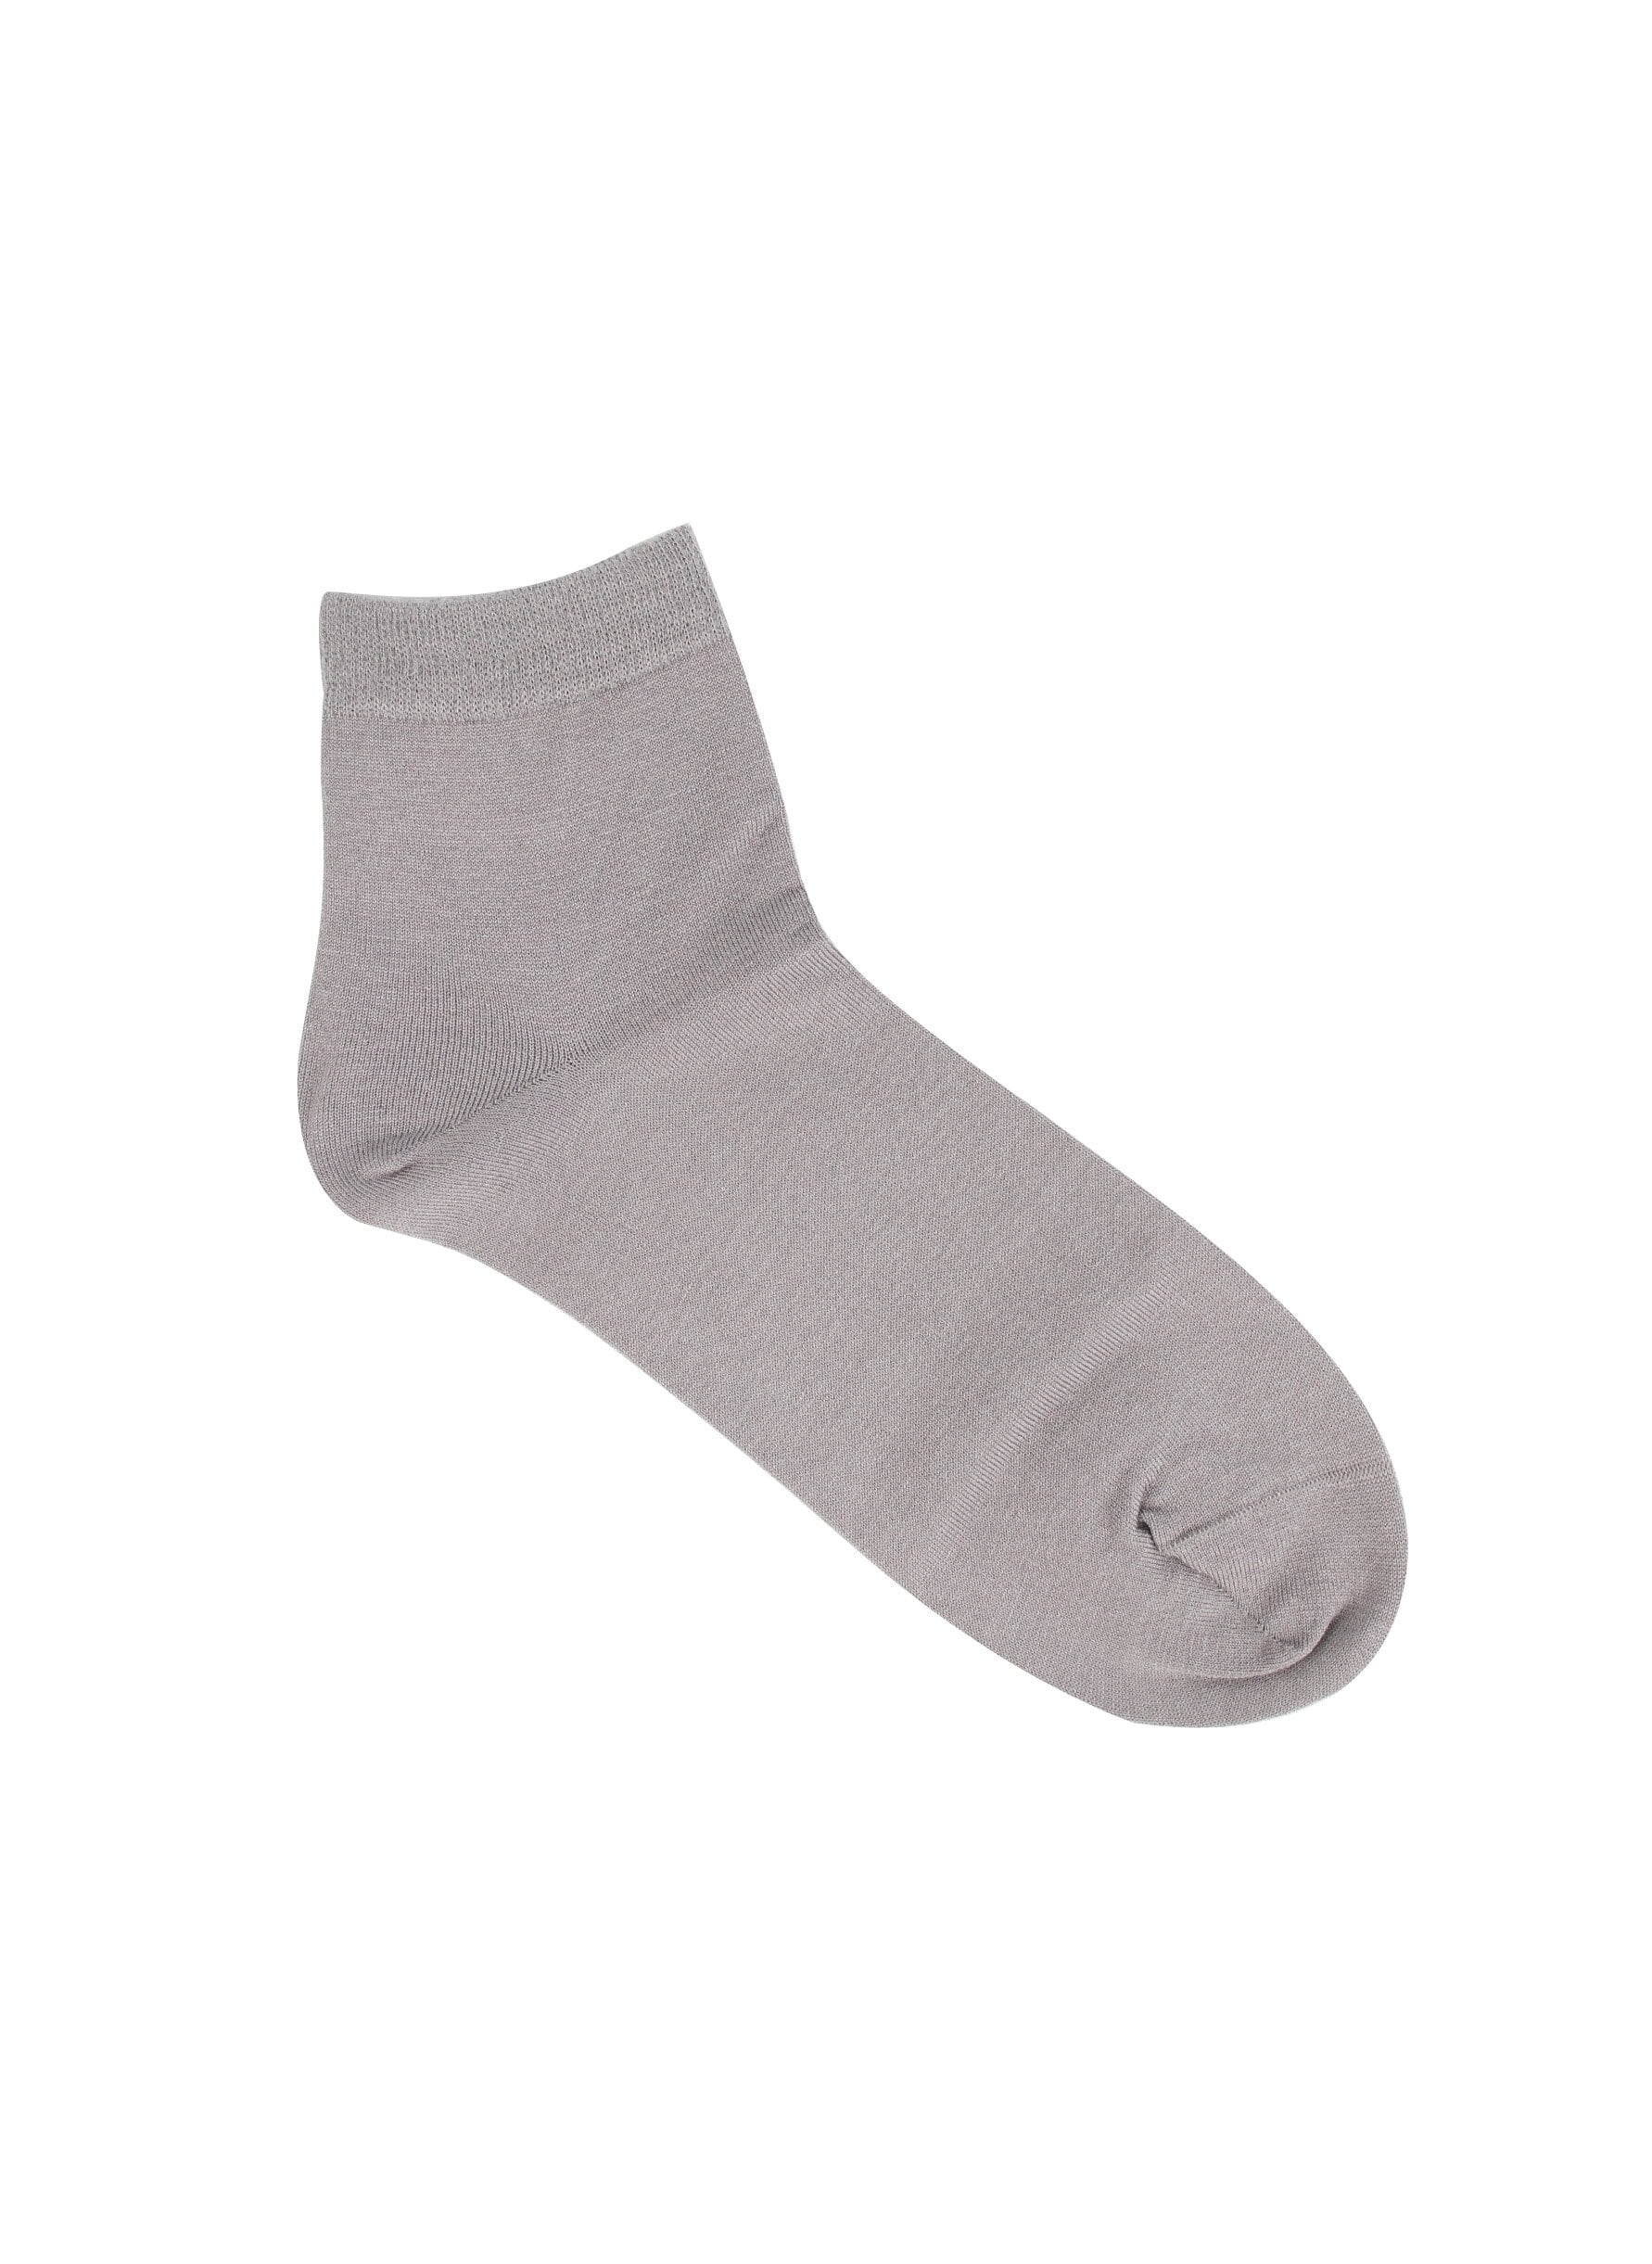 Silk socks grey